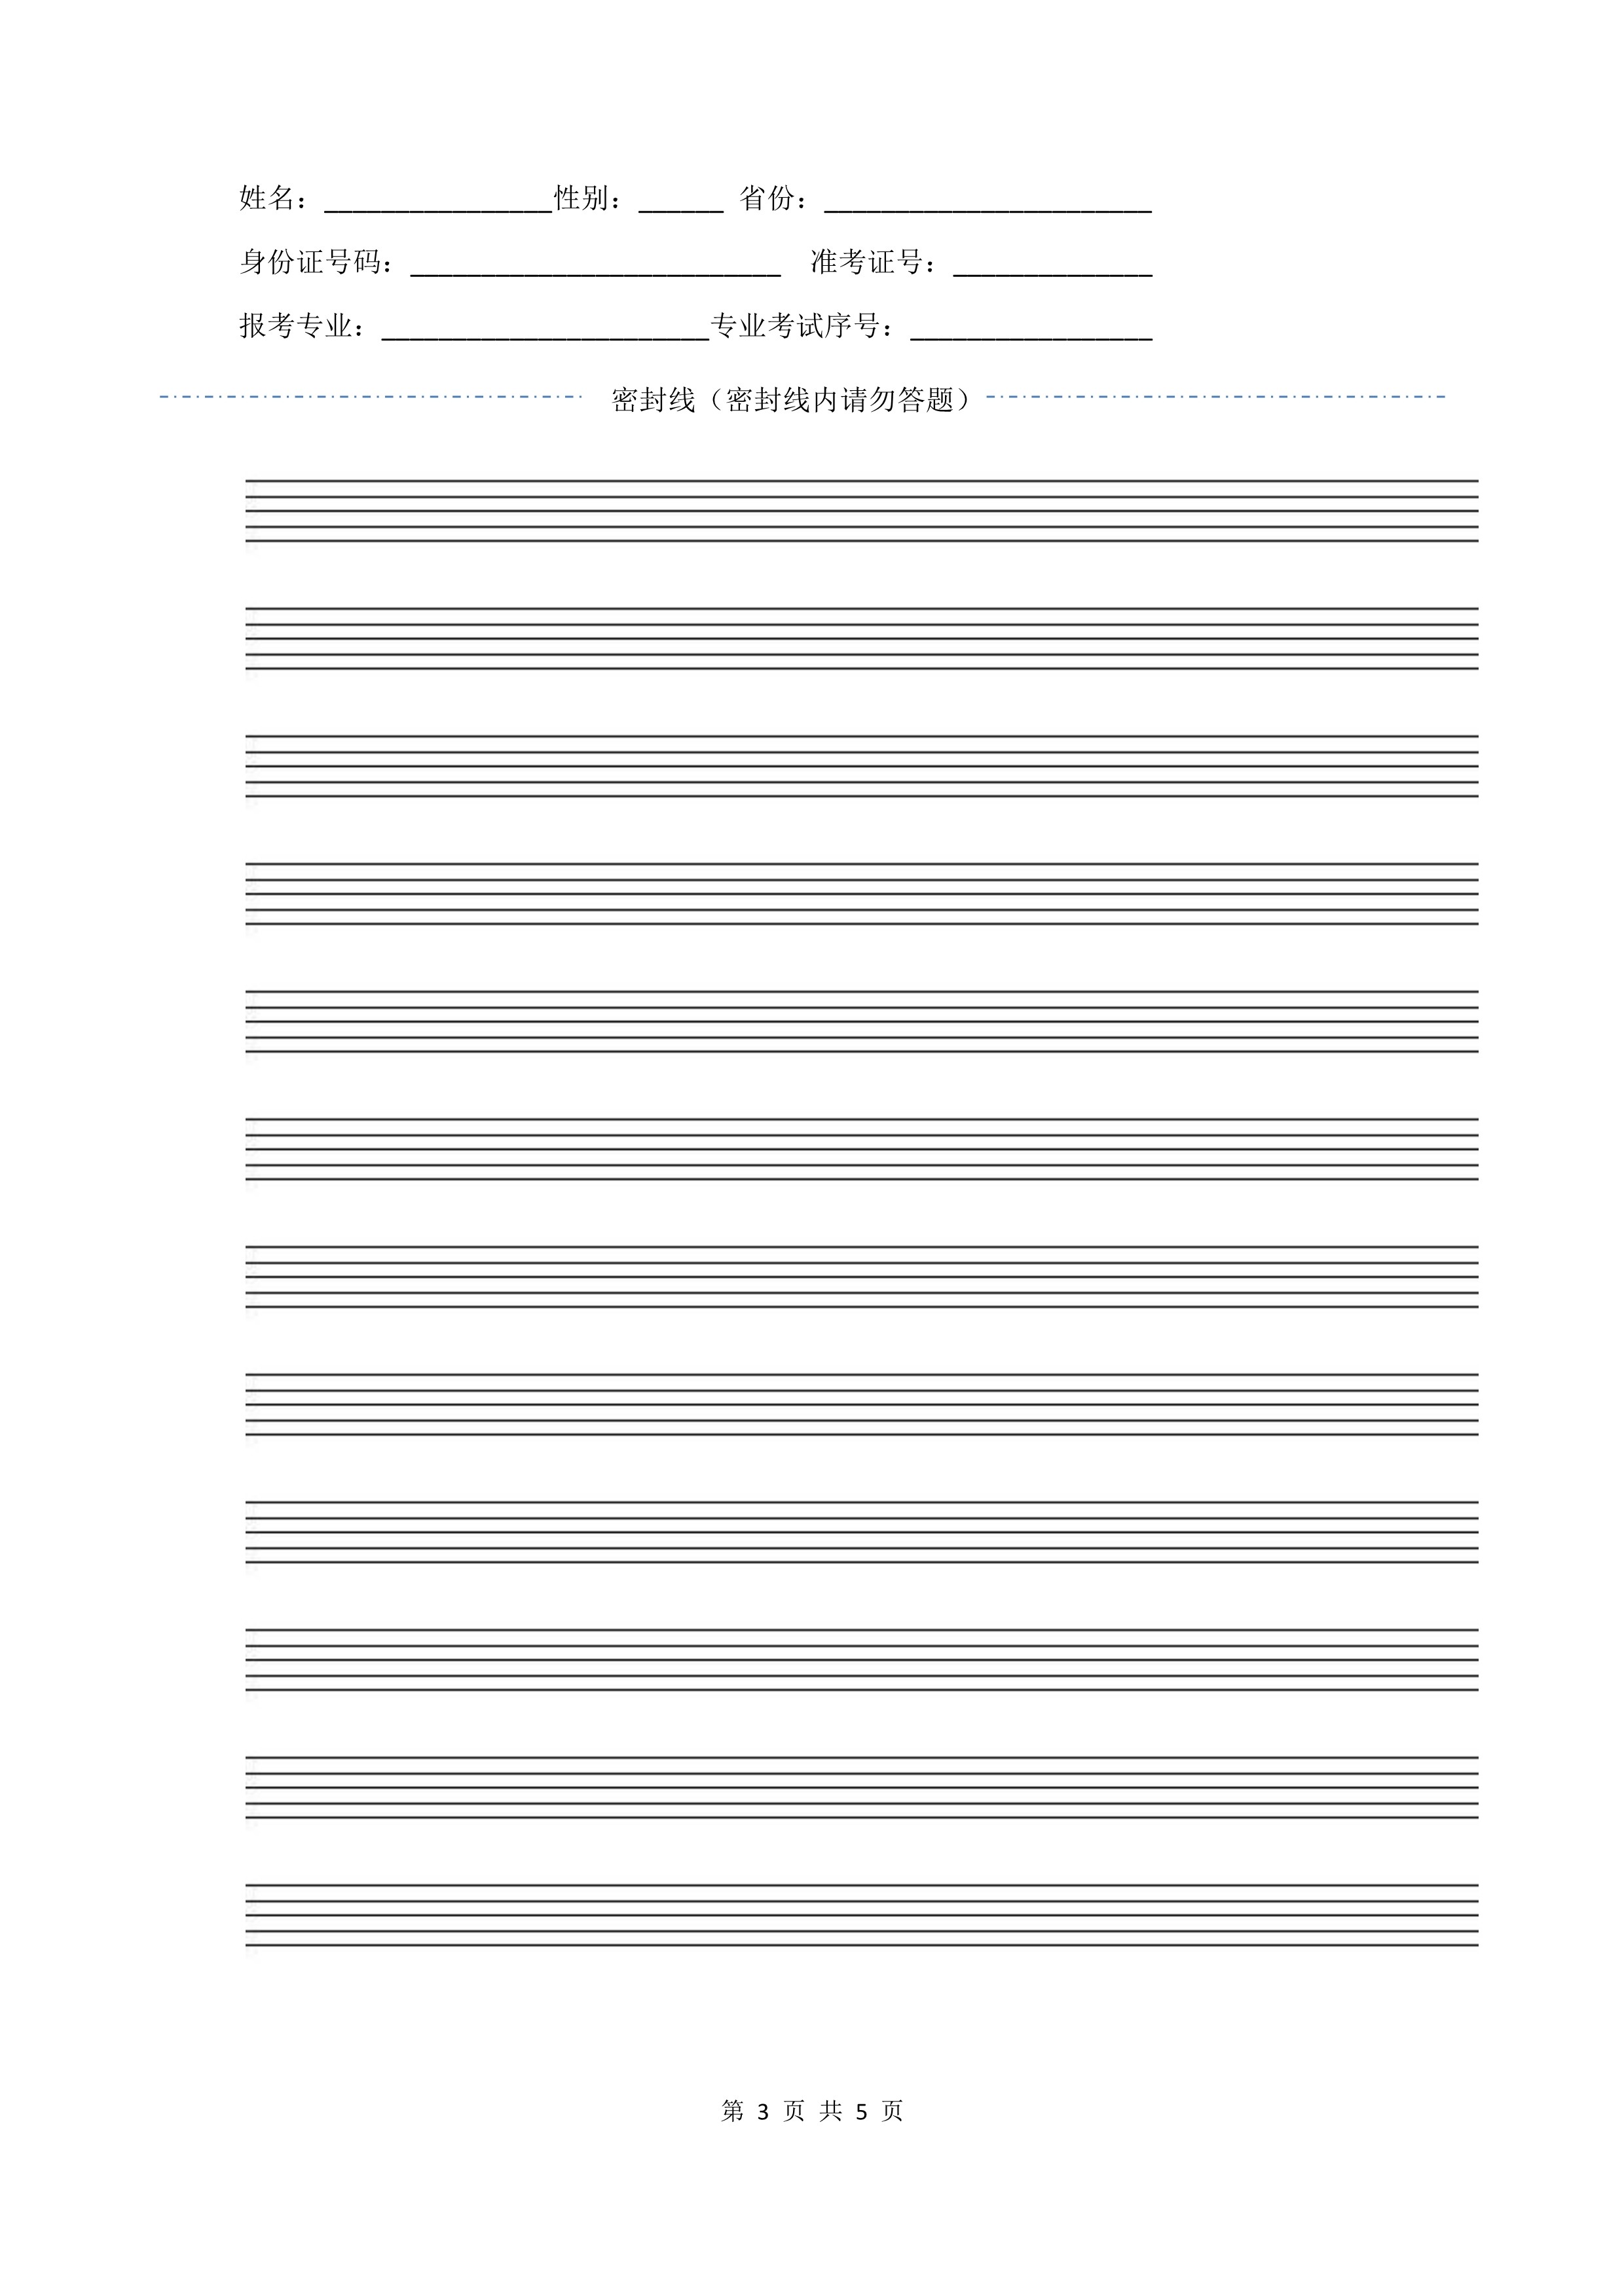 南京艺术学院2022年本科招生作曲与作曲技术理论、作曲与作曲技术理论（计算机作曲）专业《和声》科目考试答题纸及草稿纸_3.jpg